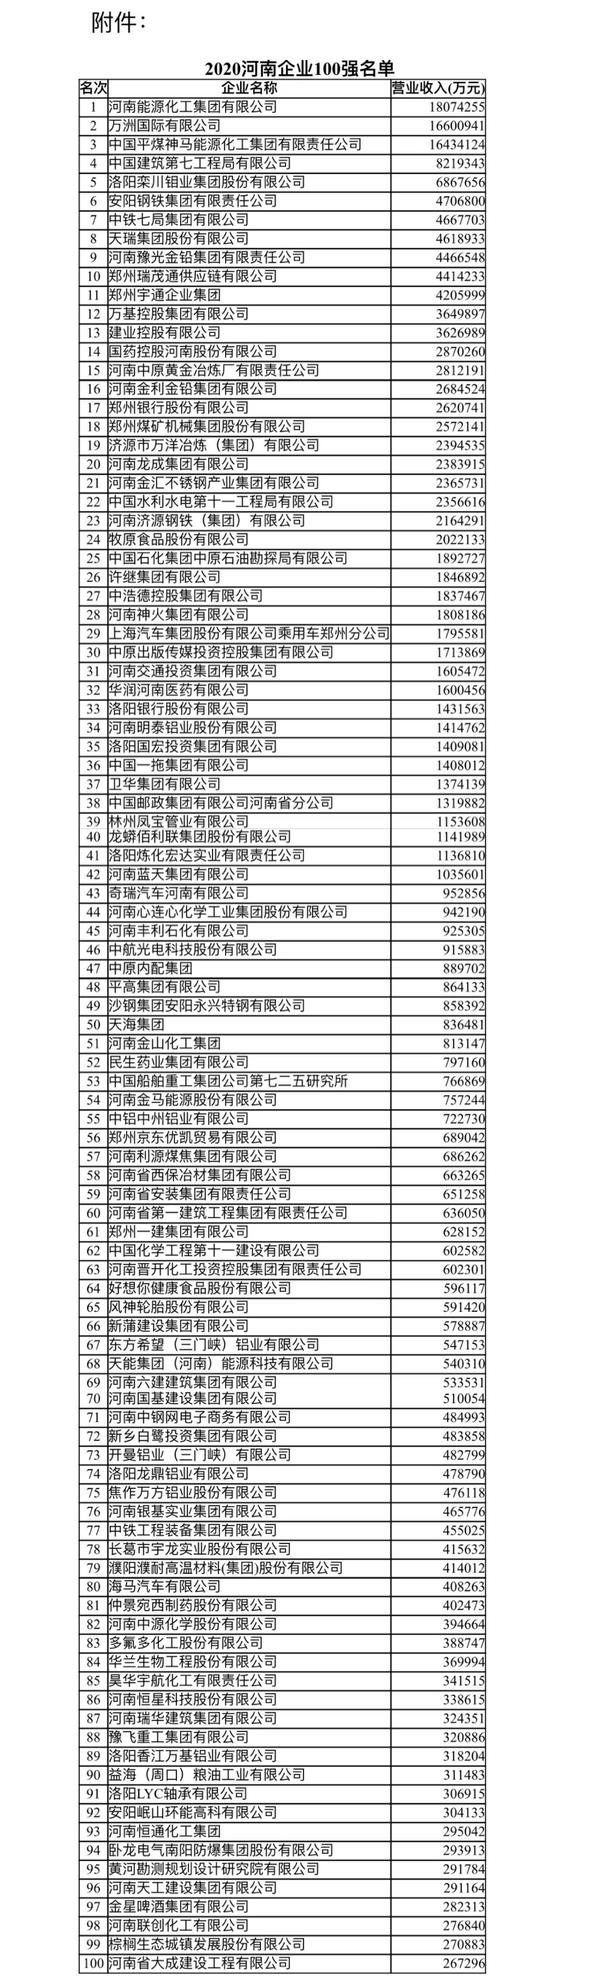 2020河南企业100强榜单出炉 入围门槛26.73亿元创新高